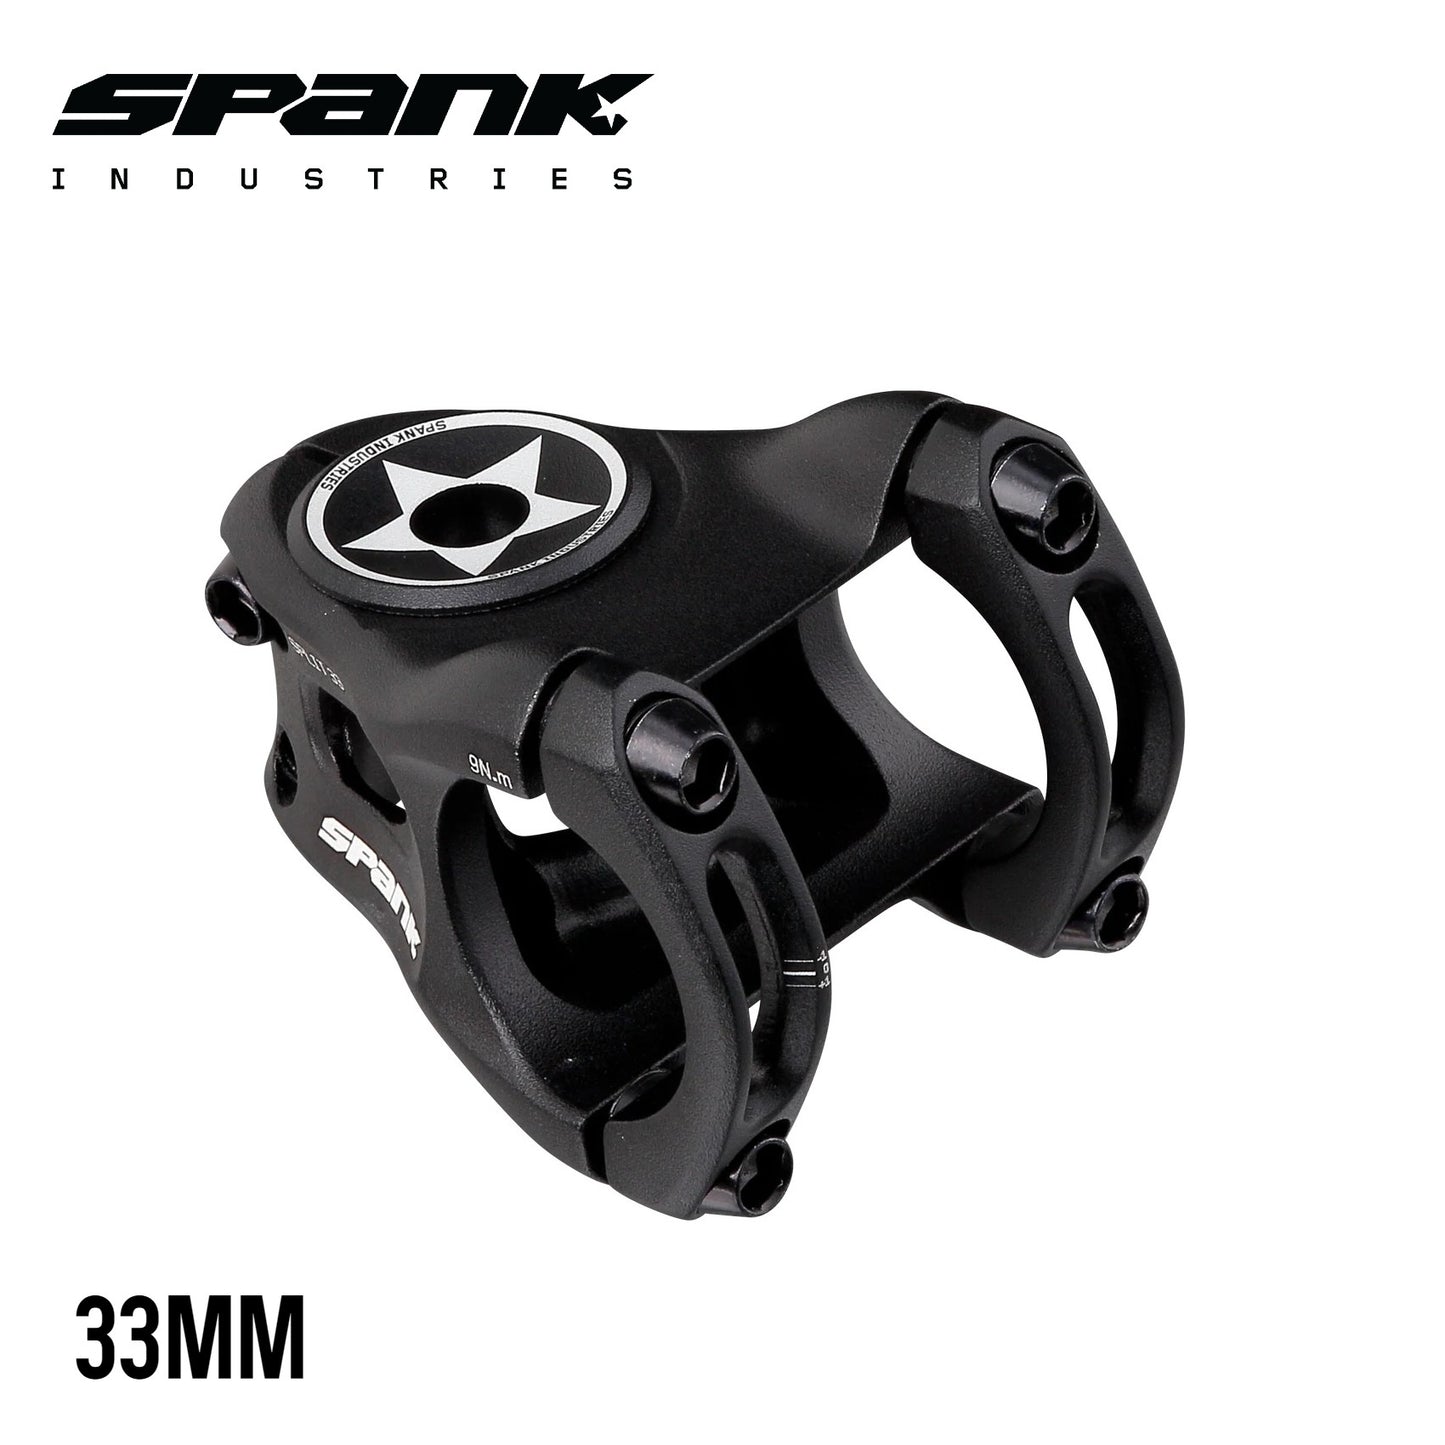 Spank Split Stem 31.8mm - Black